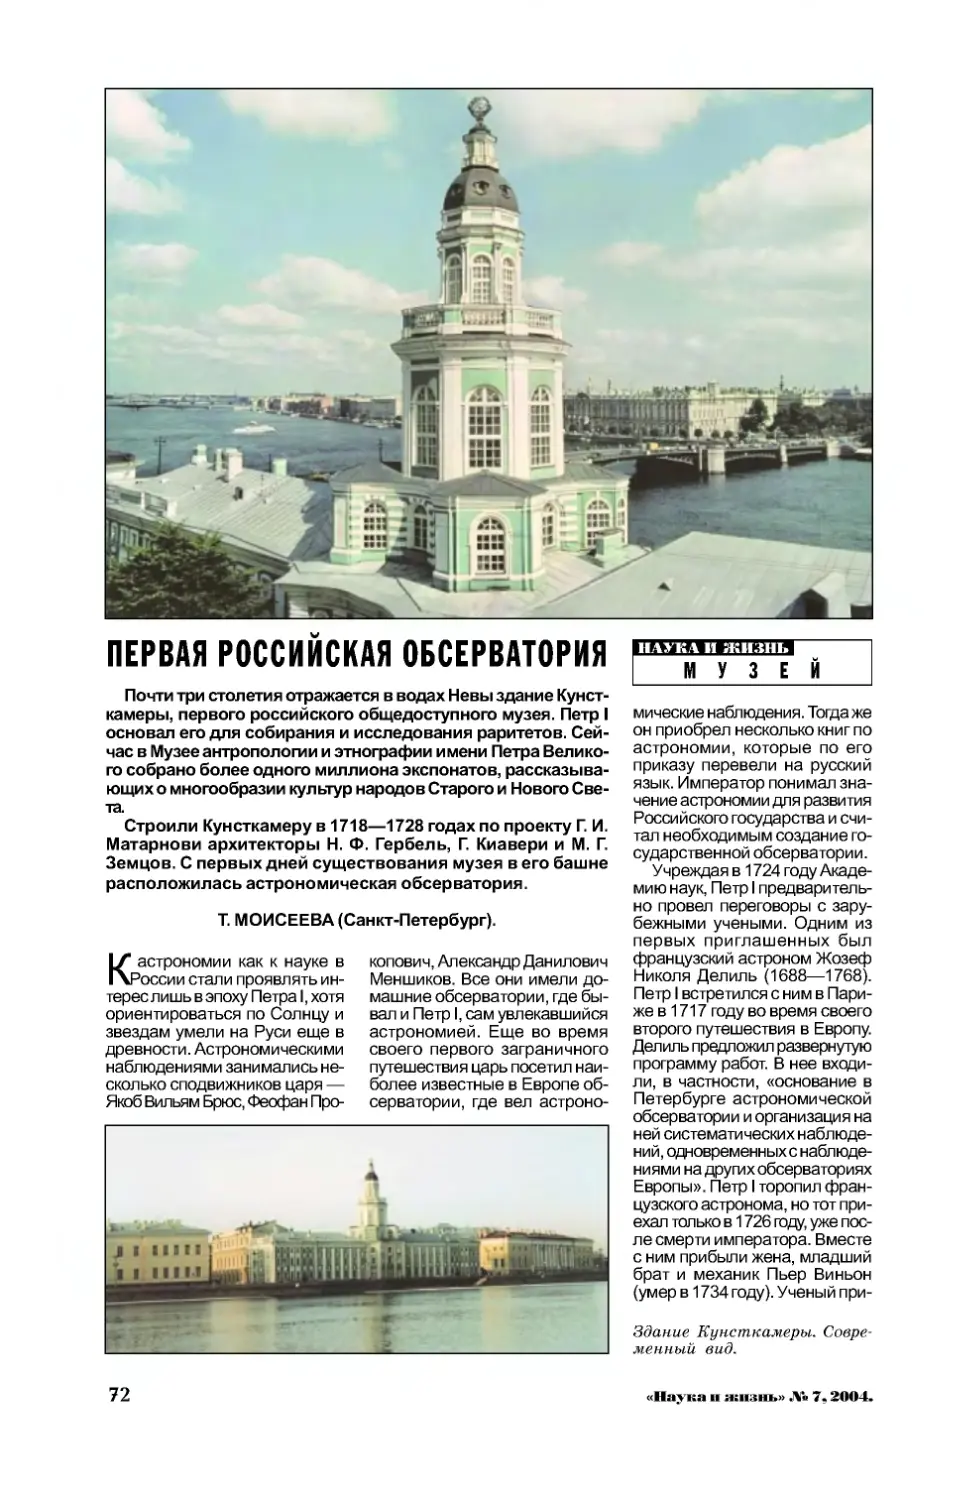 Т. МОИСЕЕВА — Первая российская обсерватория